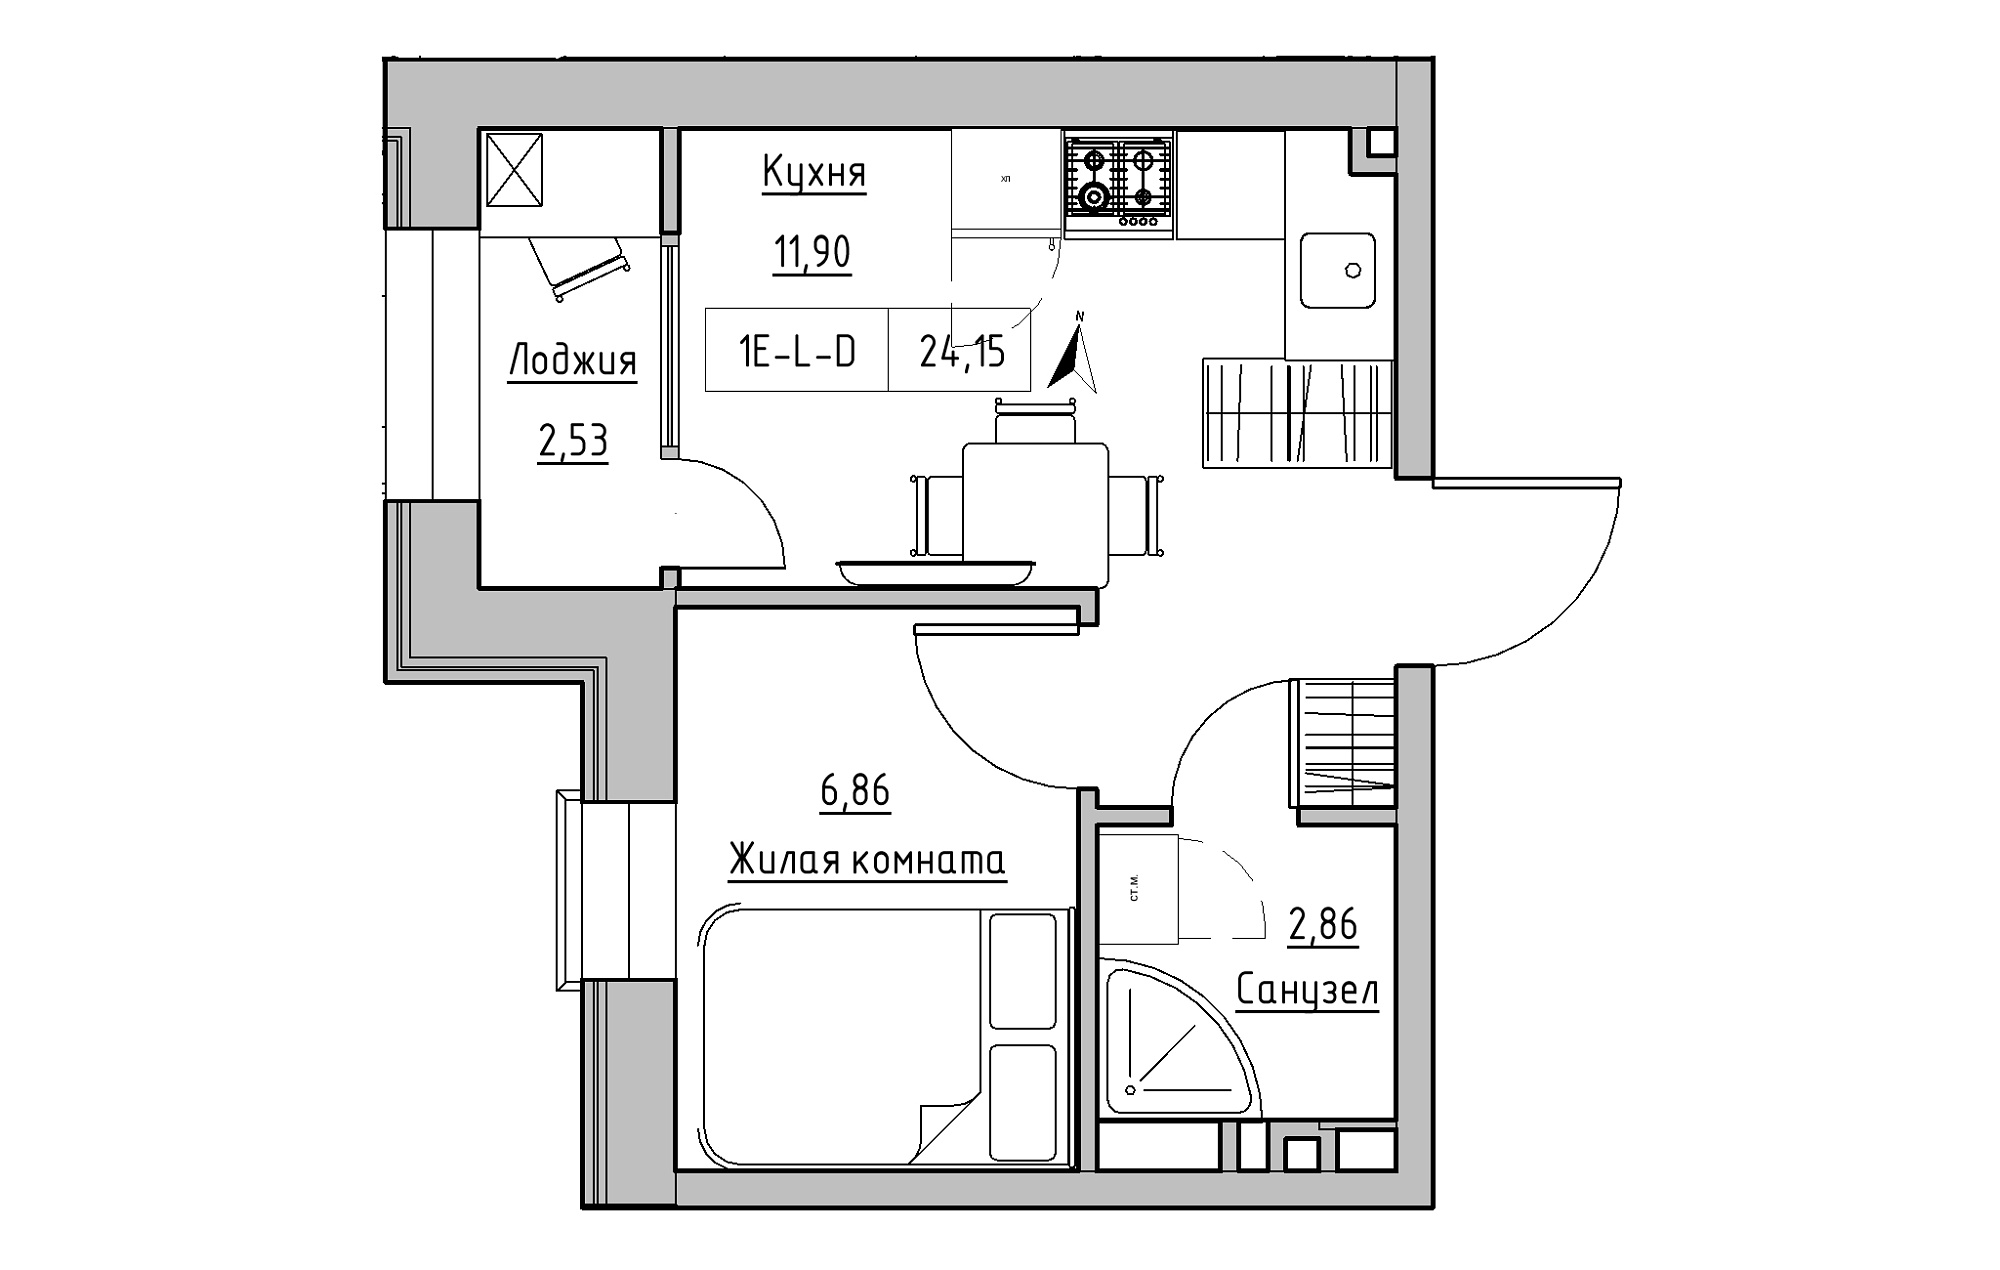 Планування 1-к квартира площею 24.15м2, KS-019-02/0001.